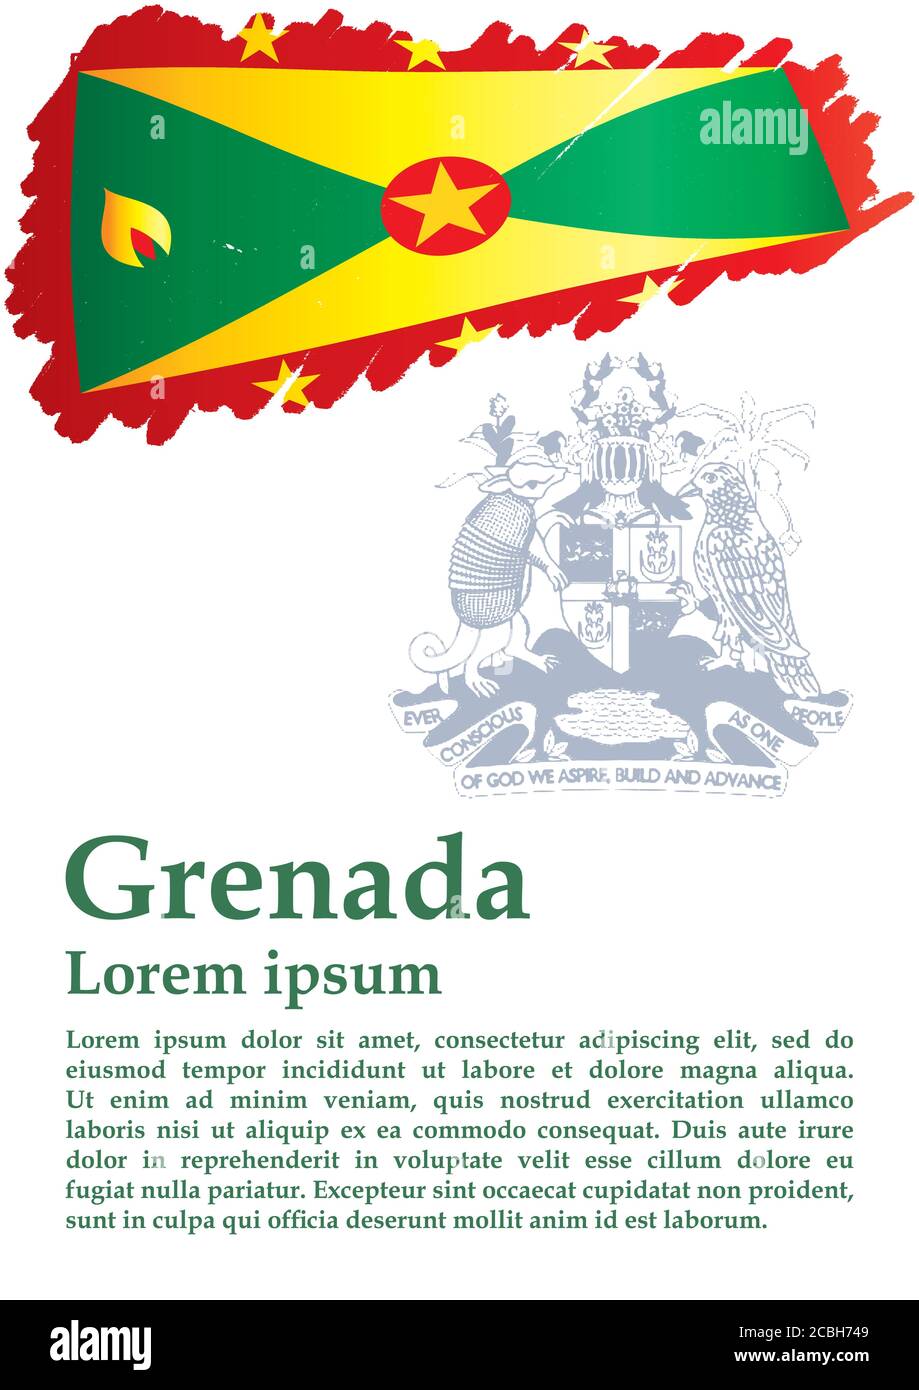 Drapeau de la Grenade, Grenade est un pays dans les Antilles, île d'épices. Modèle pour la conception de prix, un document officiel avec le drapeau de la Grenade. Illustration de Vecteur